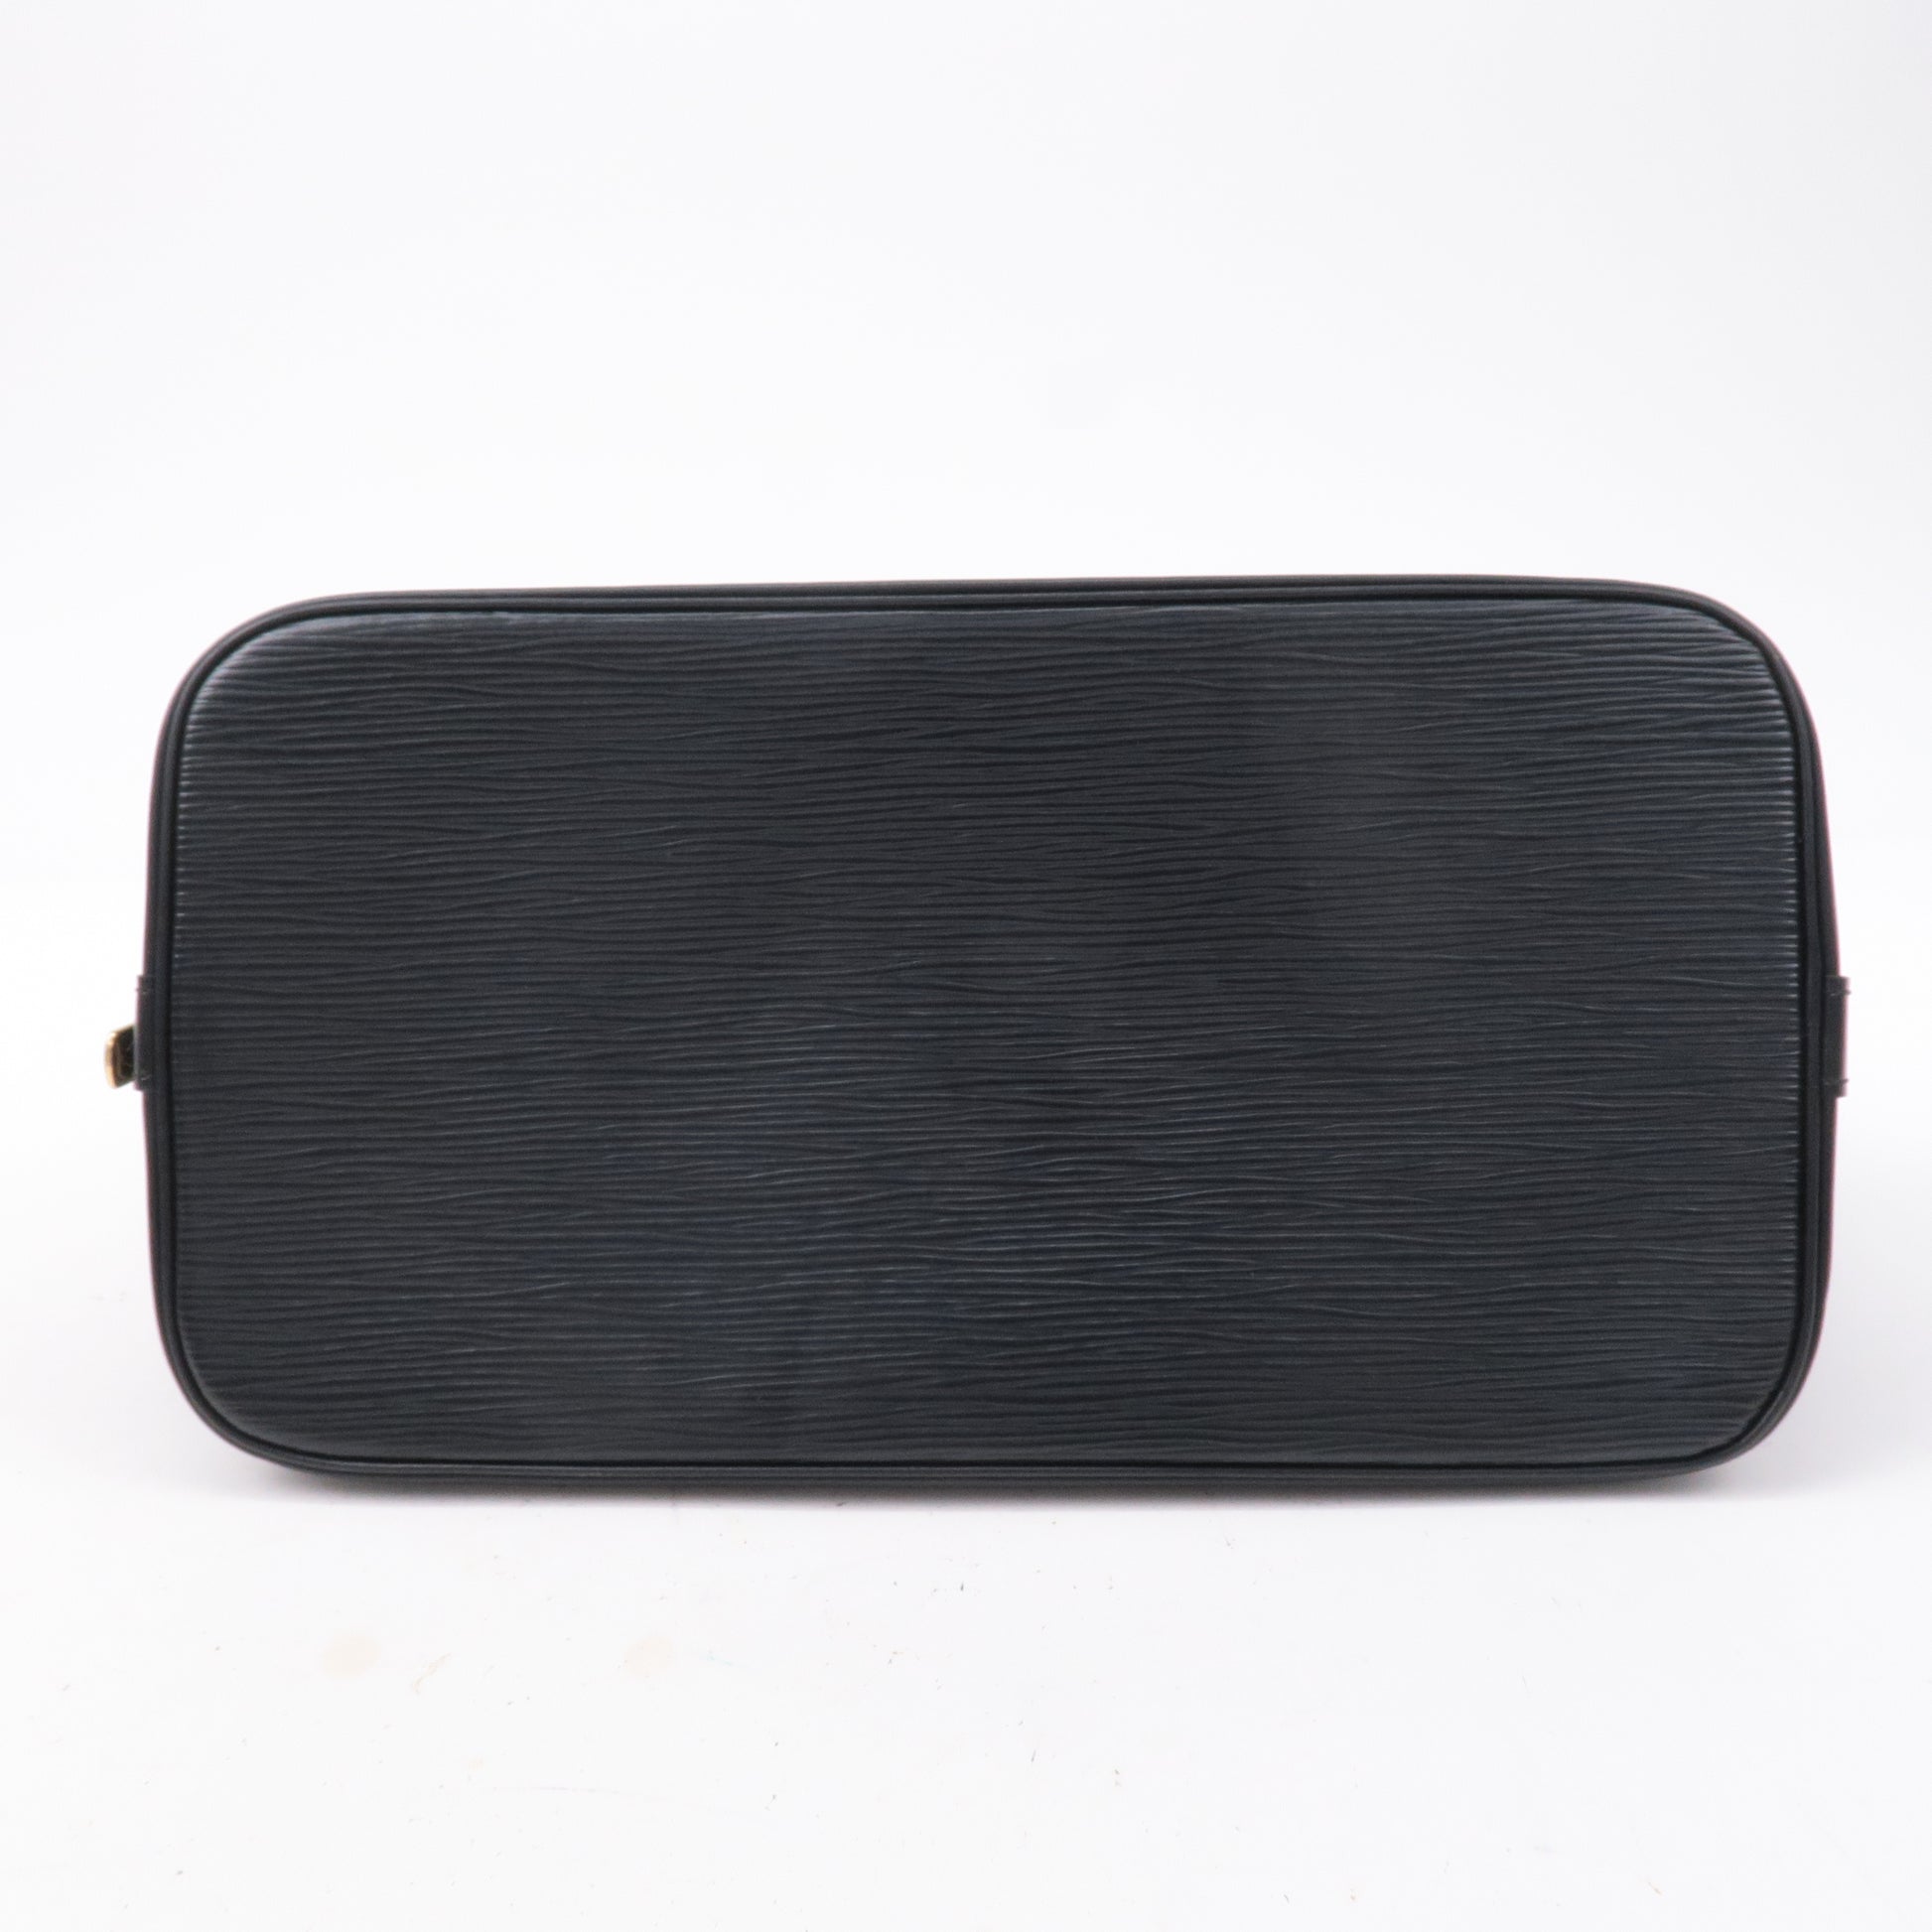 Handbag Louis Vuitton Alma Black Epi M52142 123020011 - Heritage